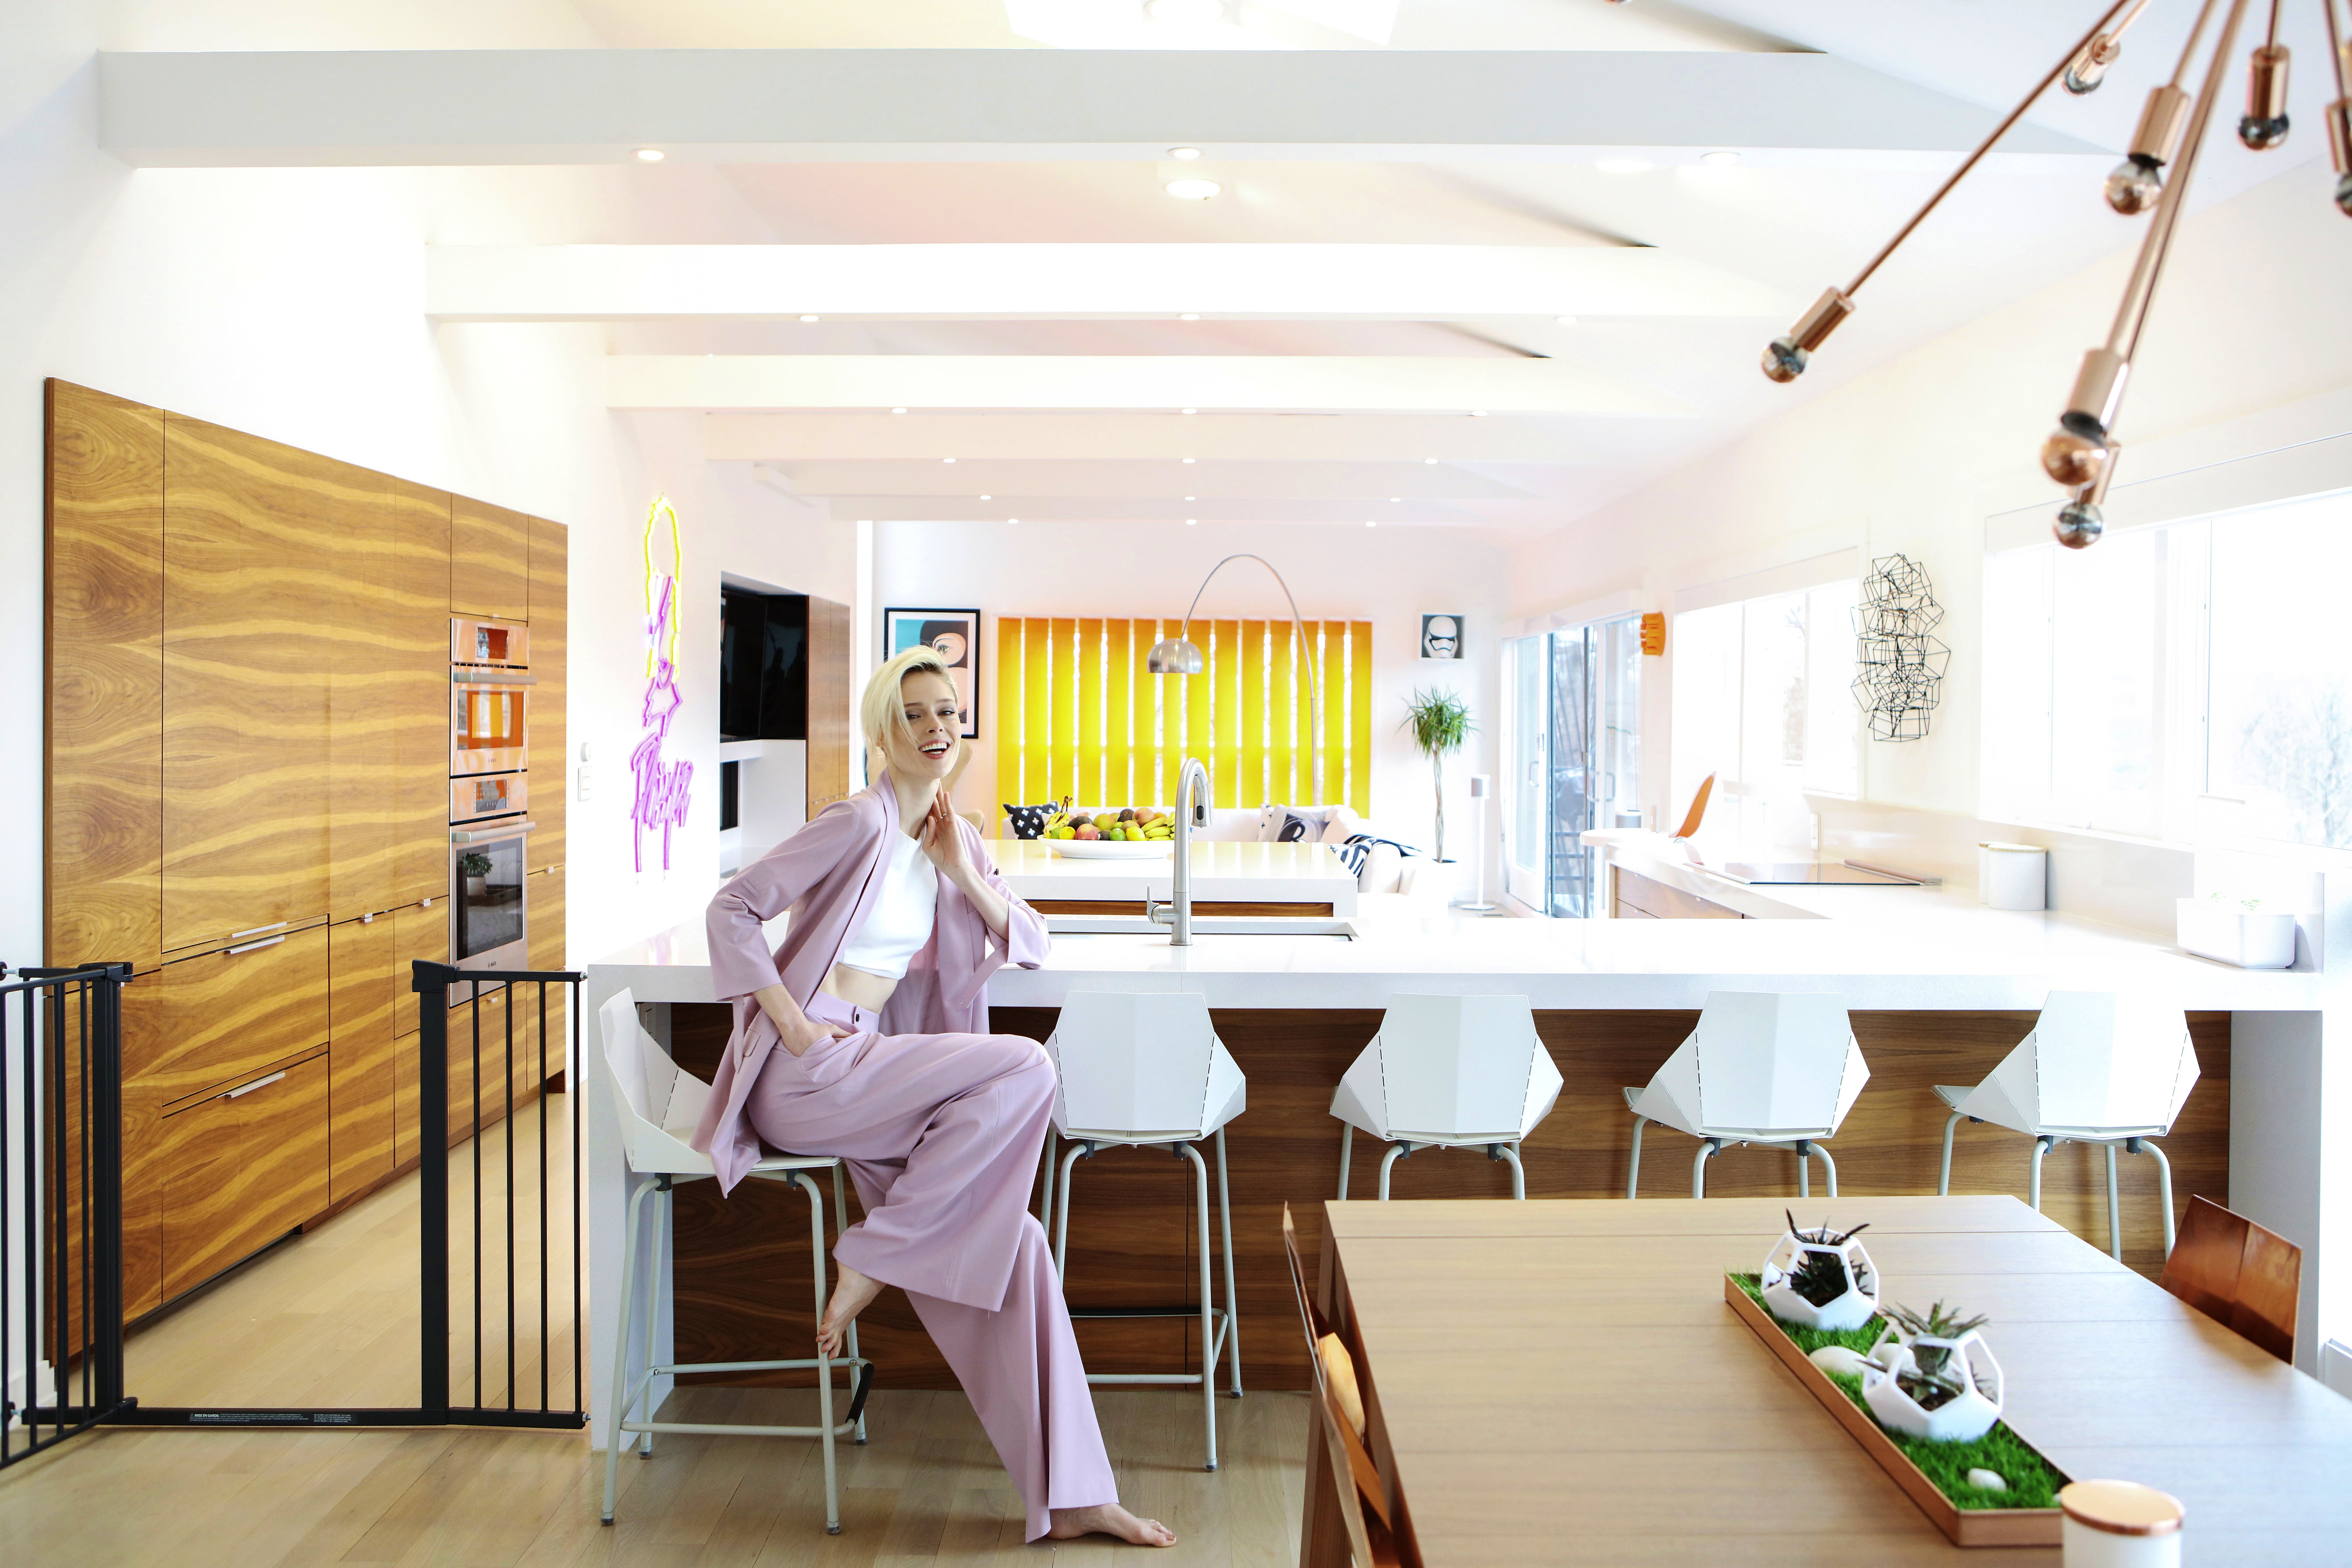 Image of 6. coco rocha kitchen overall with coco 2 in Supermodel Coco Rocha's perfect kitchen - Cosentino